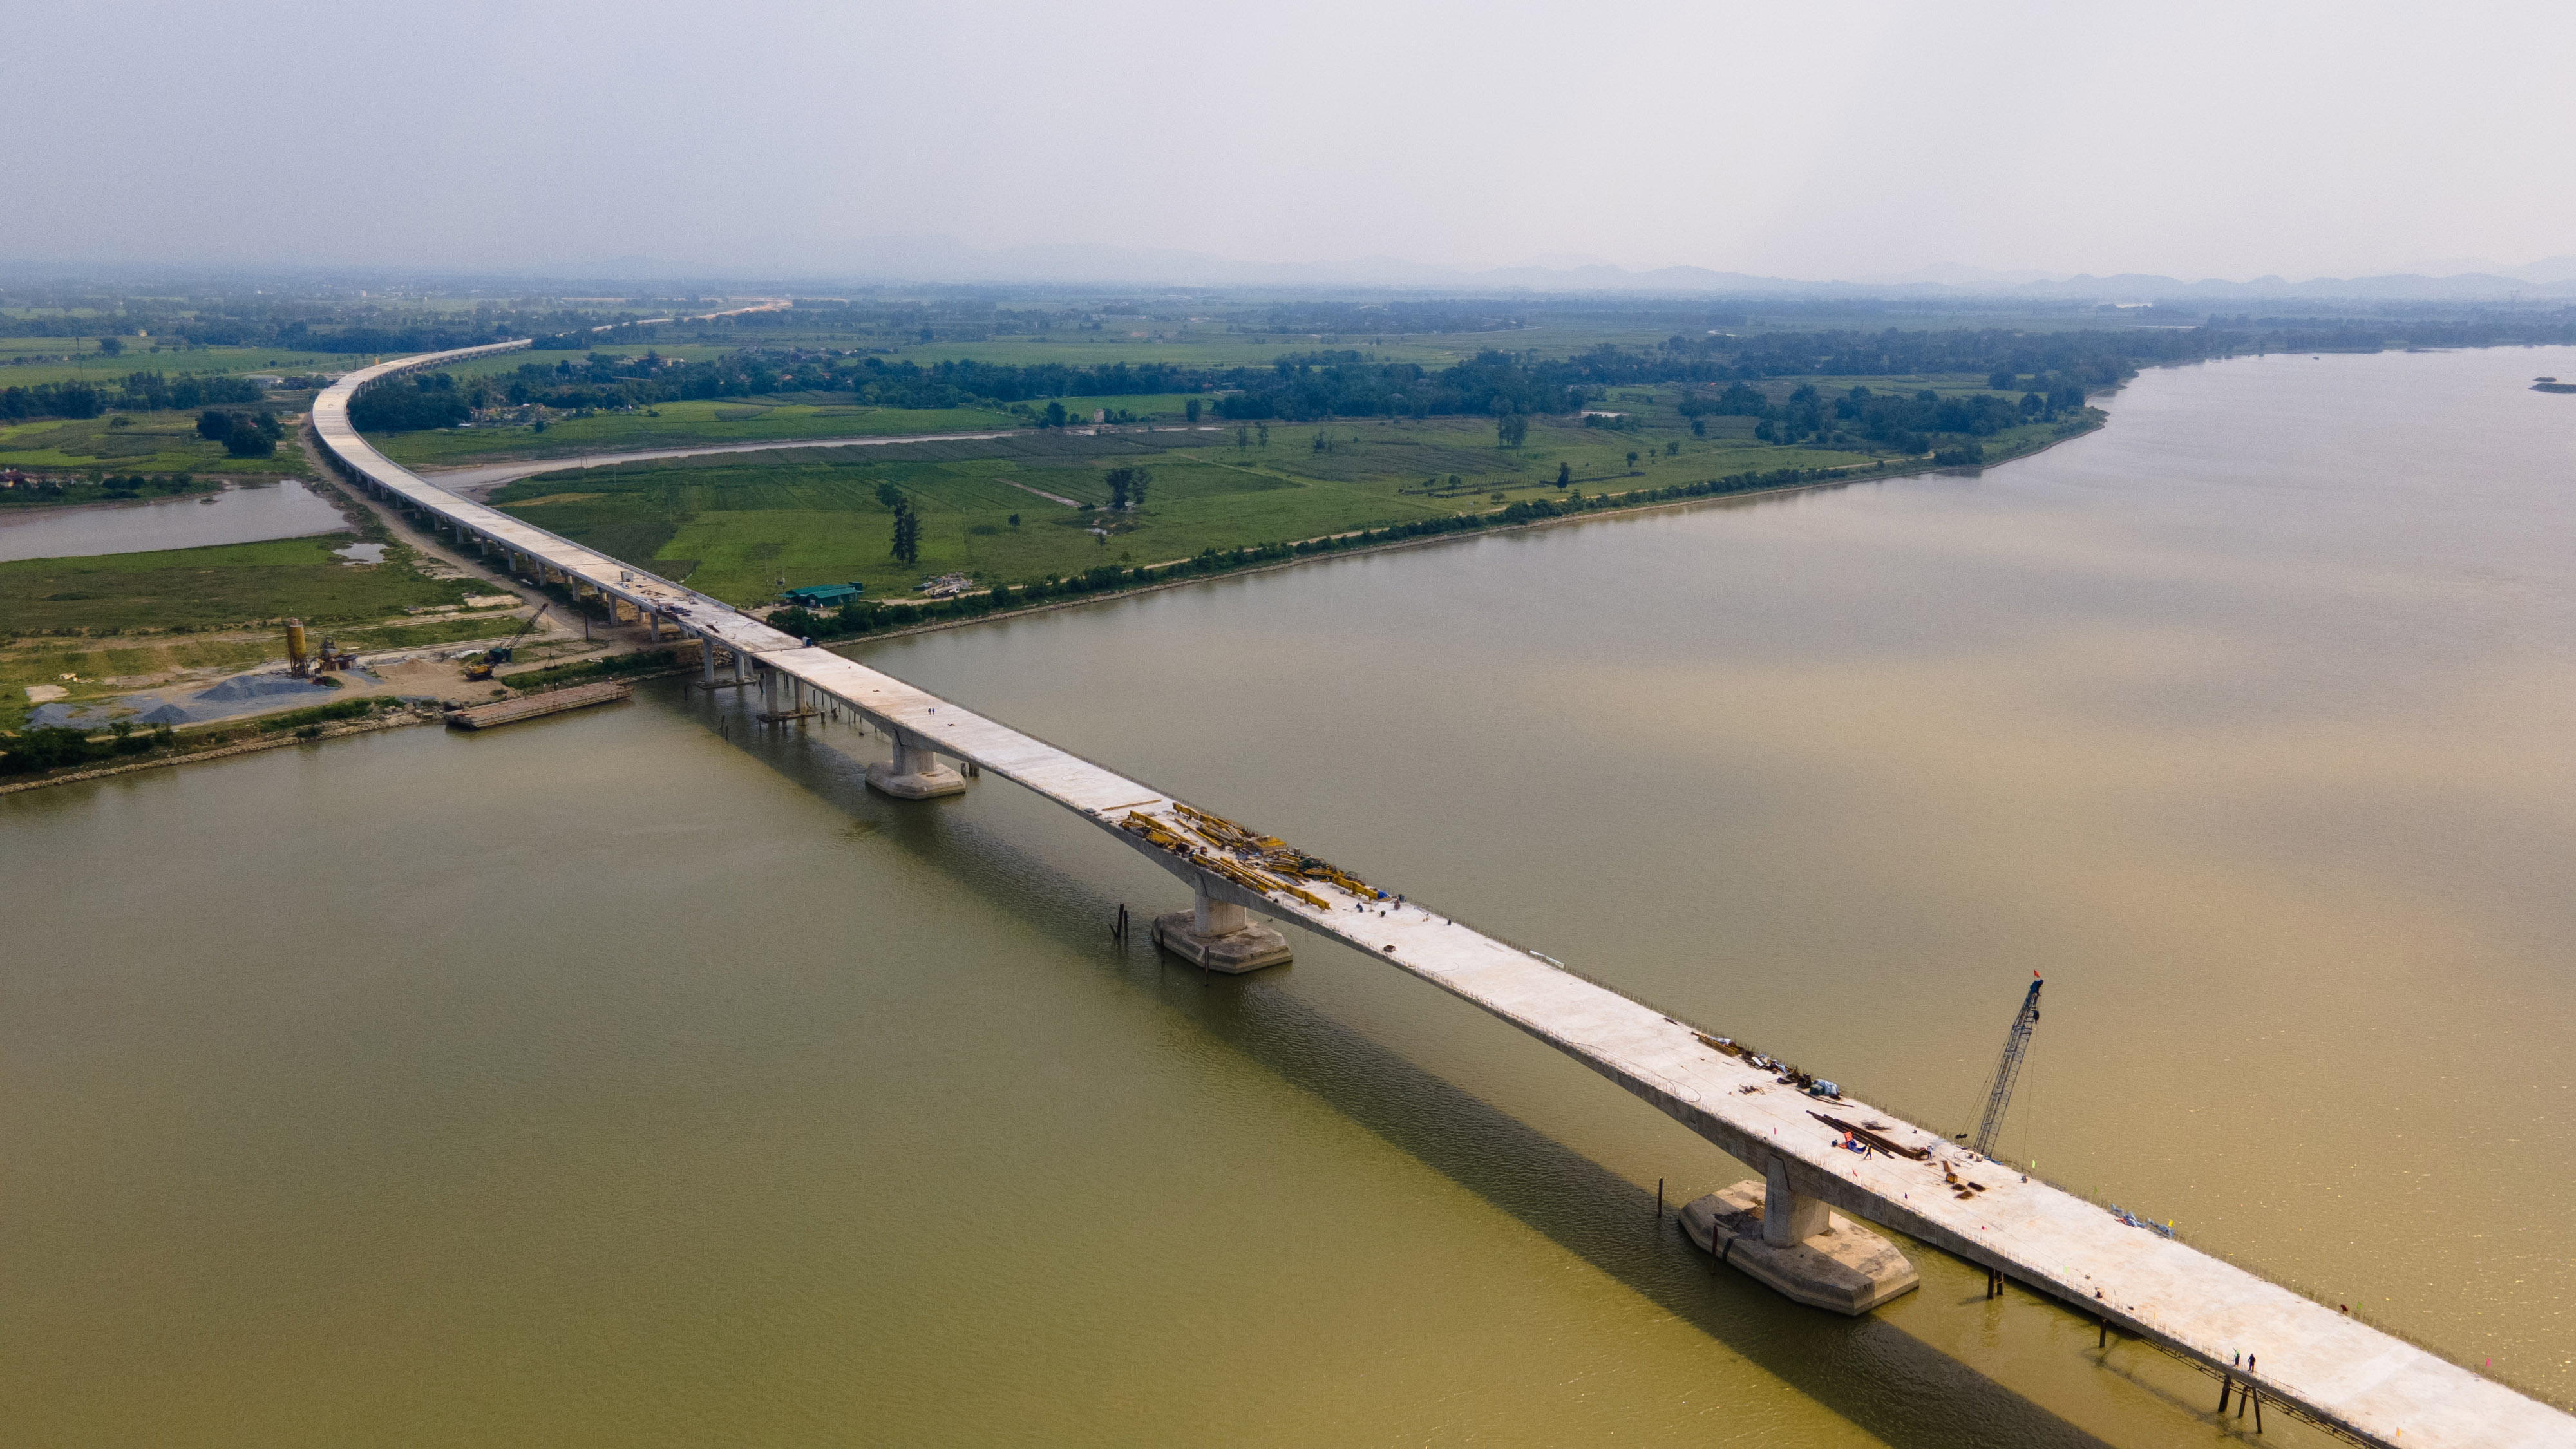 Dự án cao tốc Bắc - Nam phía Đông đoạn Diễn Châu - Bãi Vọt có 31 cầu đường bộ; trong đó, cầu Hưng Đức bắc qua sông Lam nối 2 tỉnh Nghệ An và Hà Tĩnh là cây cầu vượt sông dài nhất, với chiều dài hơn 4km.